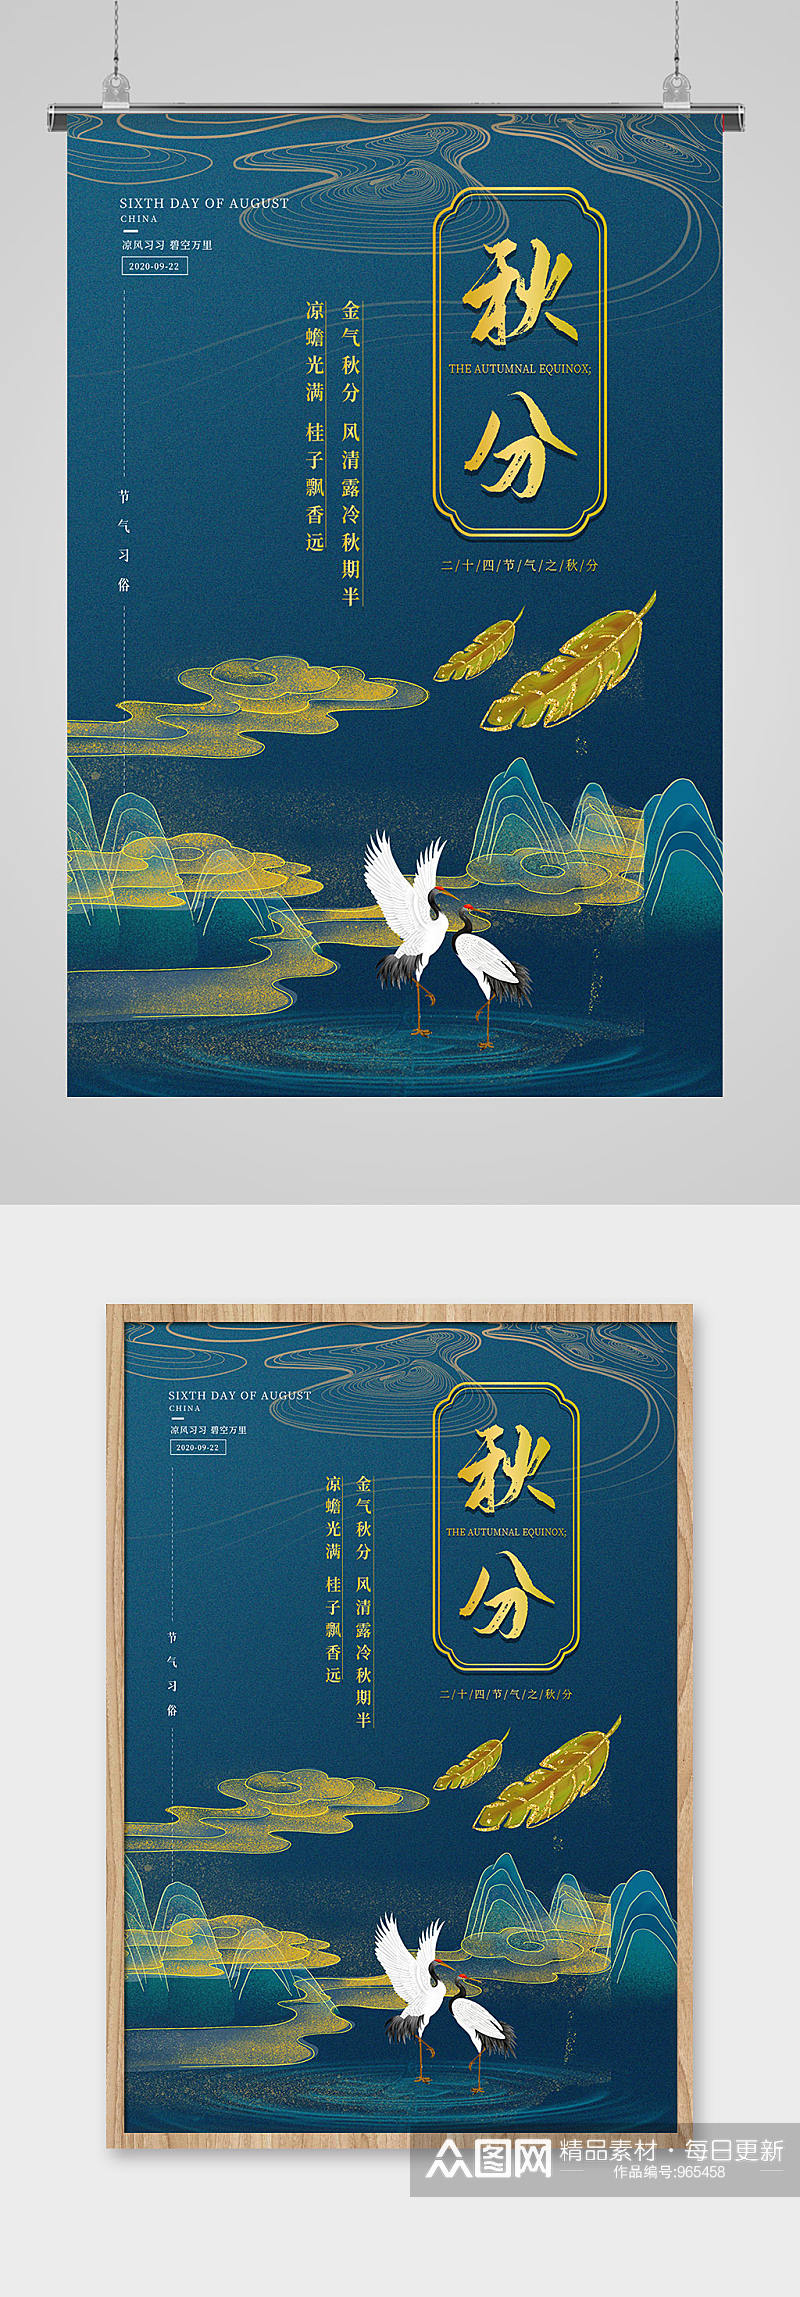 二十四节气之秋分墨色简洁中国风印刷海报素材